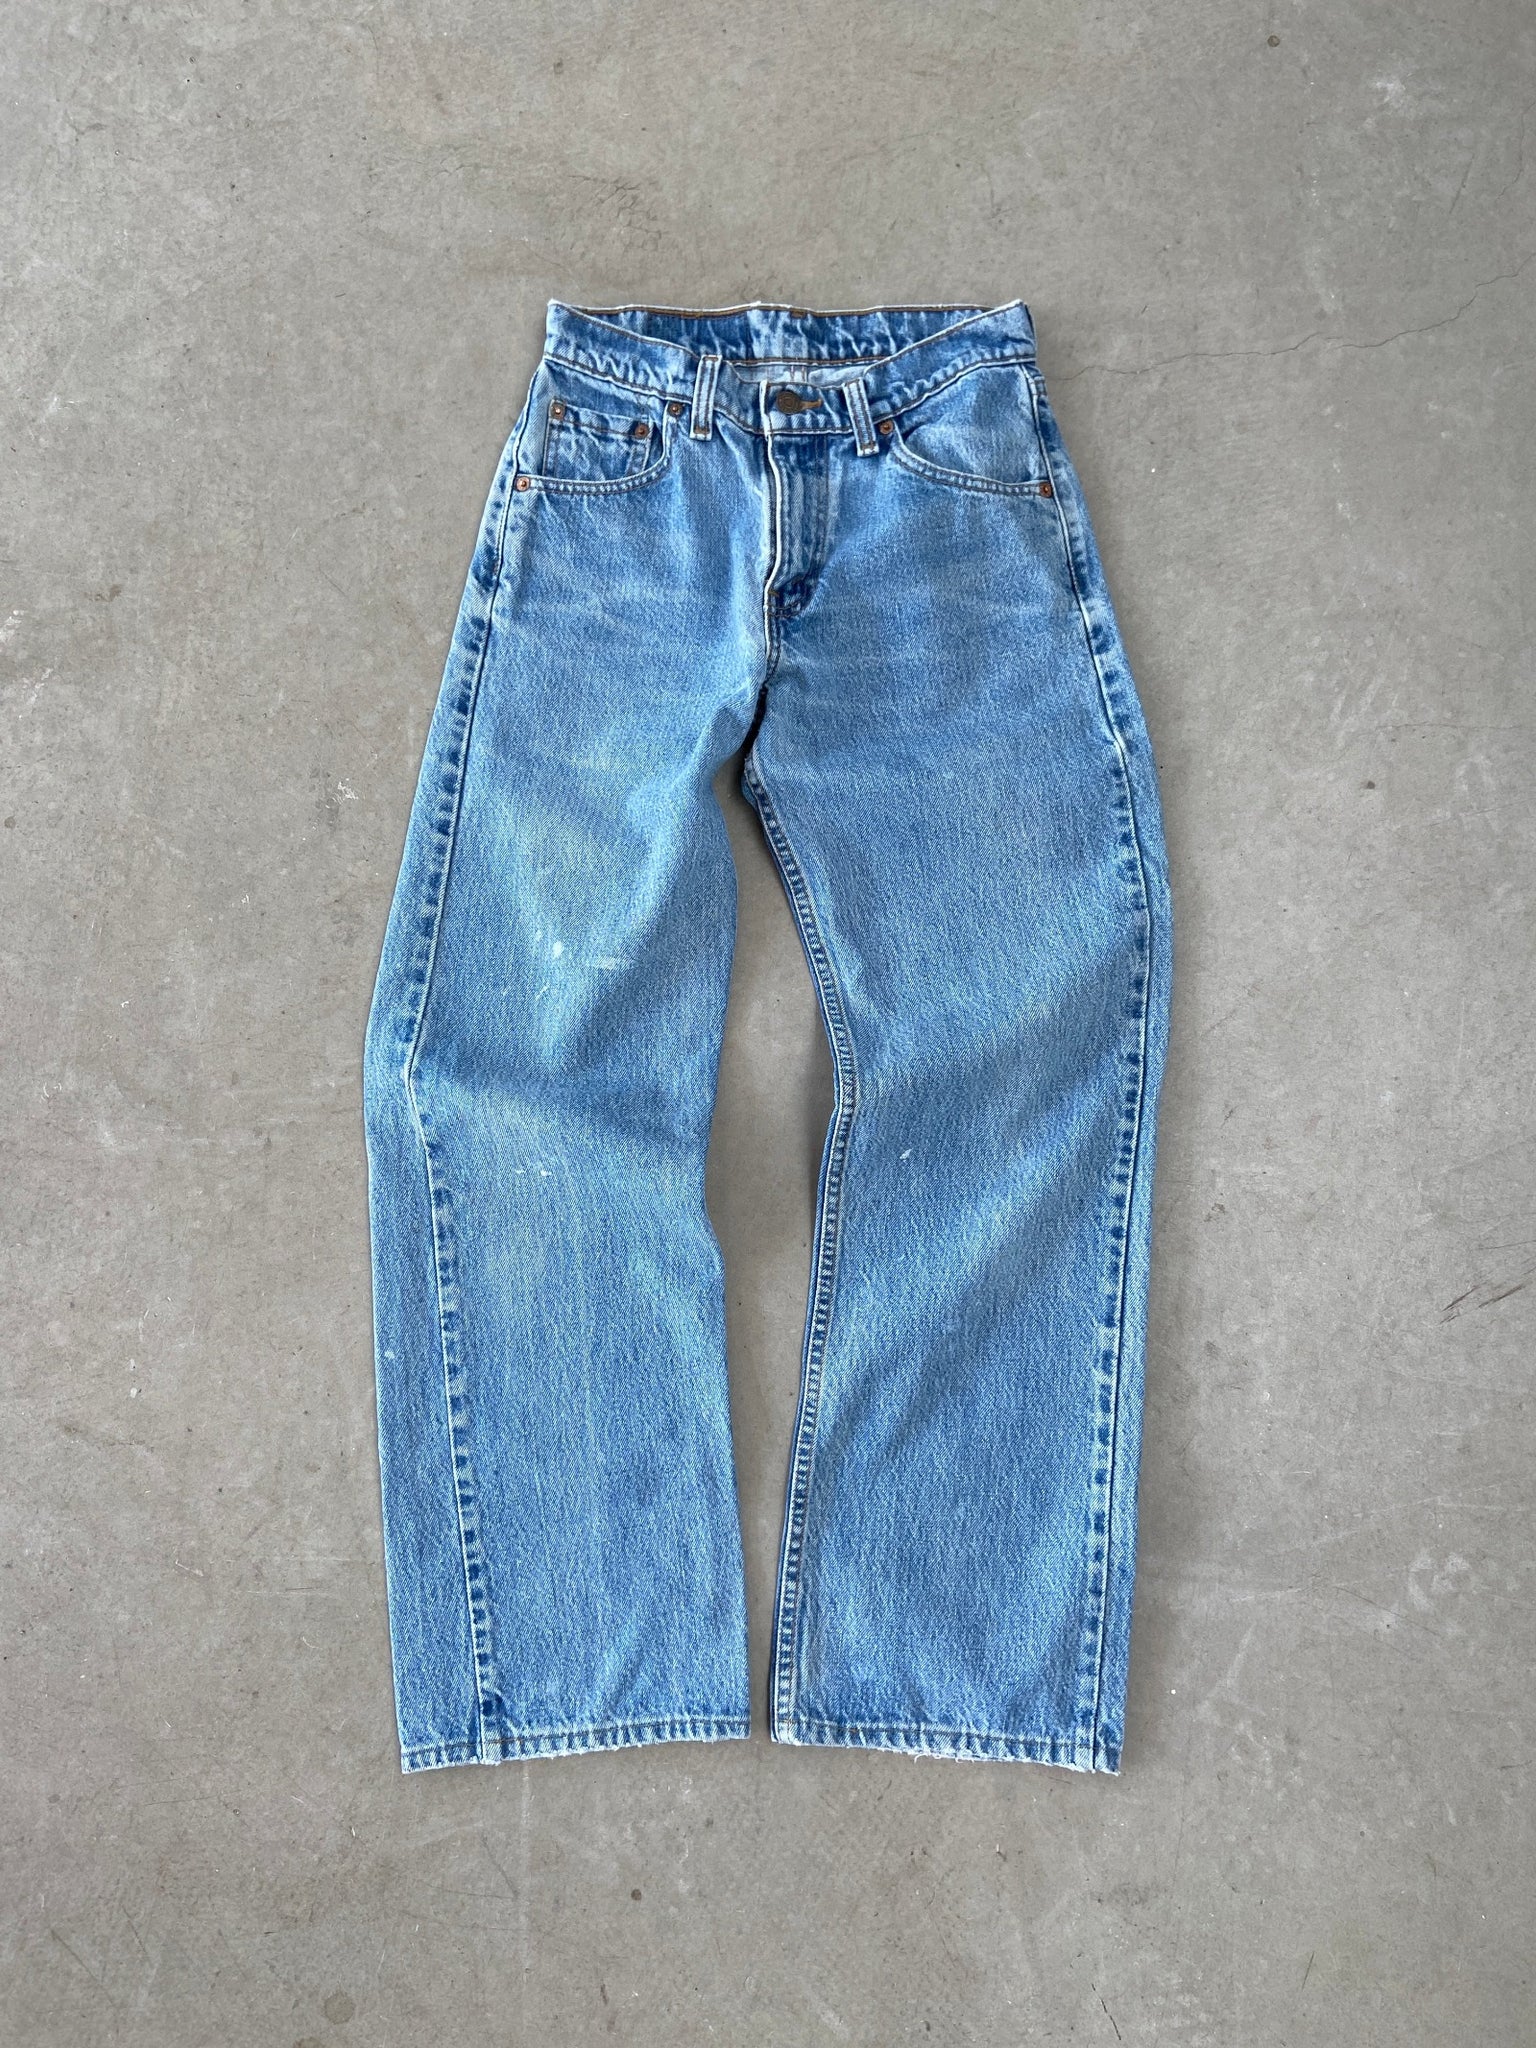 1991 Levi's 542 Jeans - 26 x 29